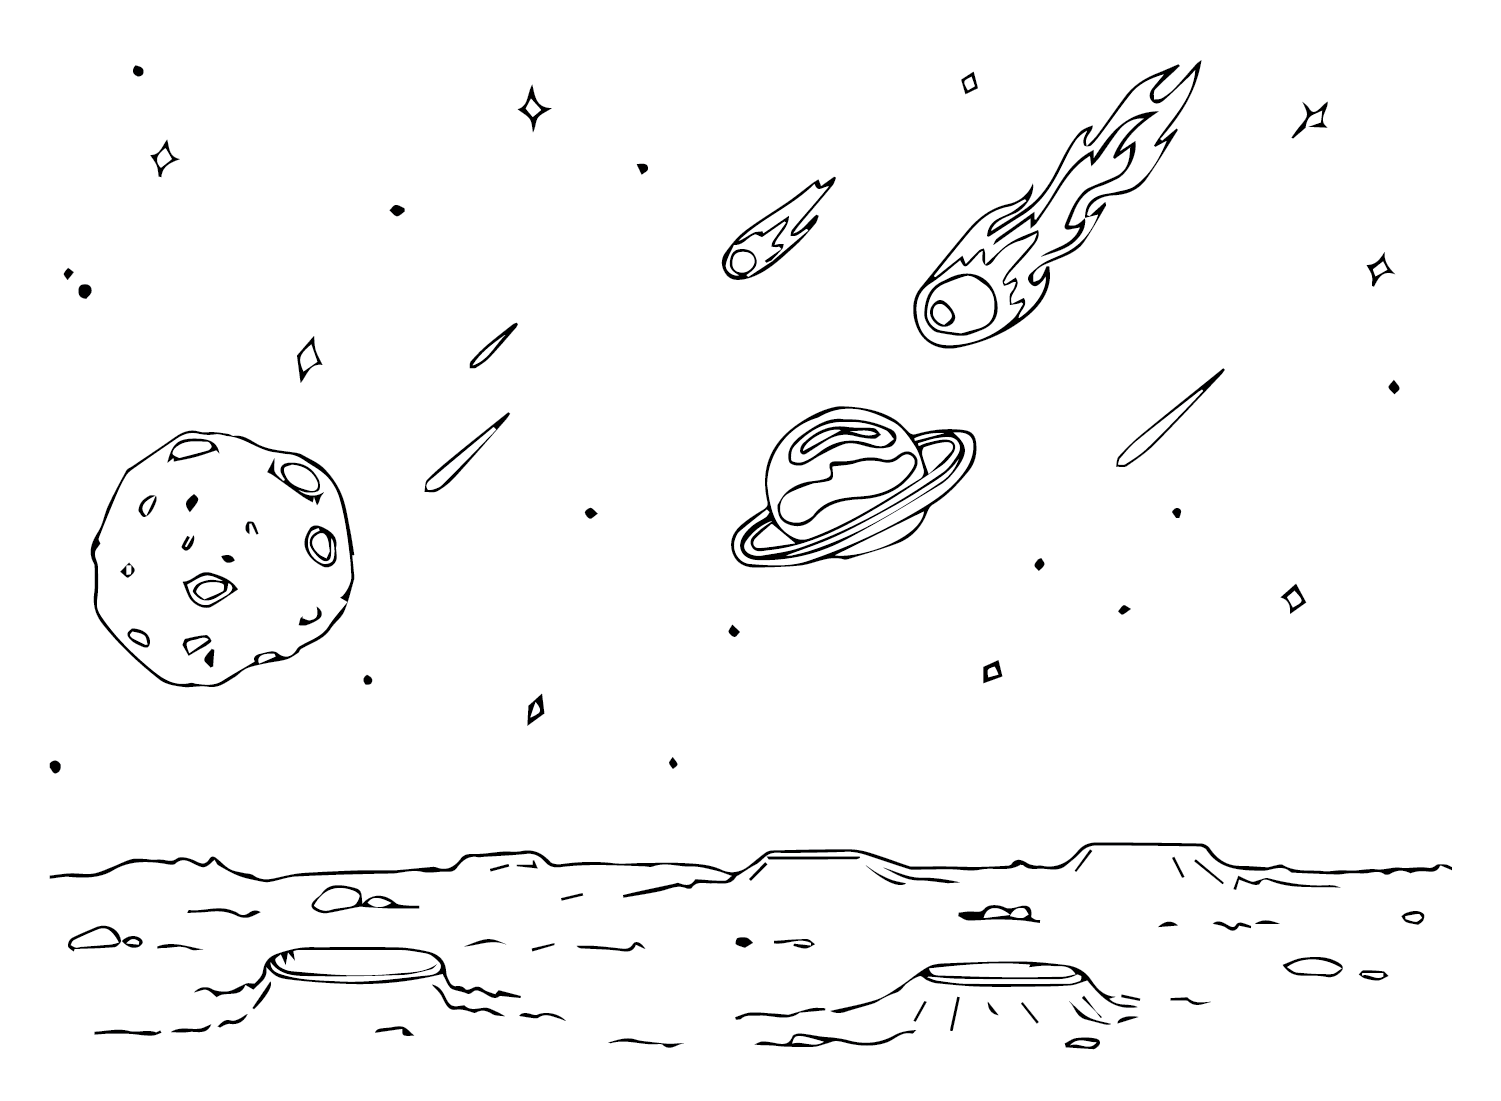 Изображения астероида с астероида